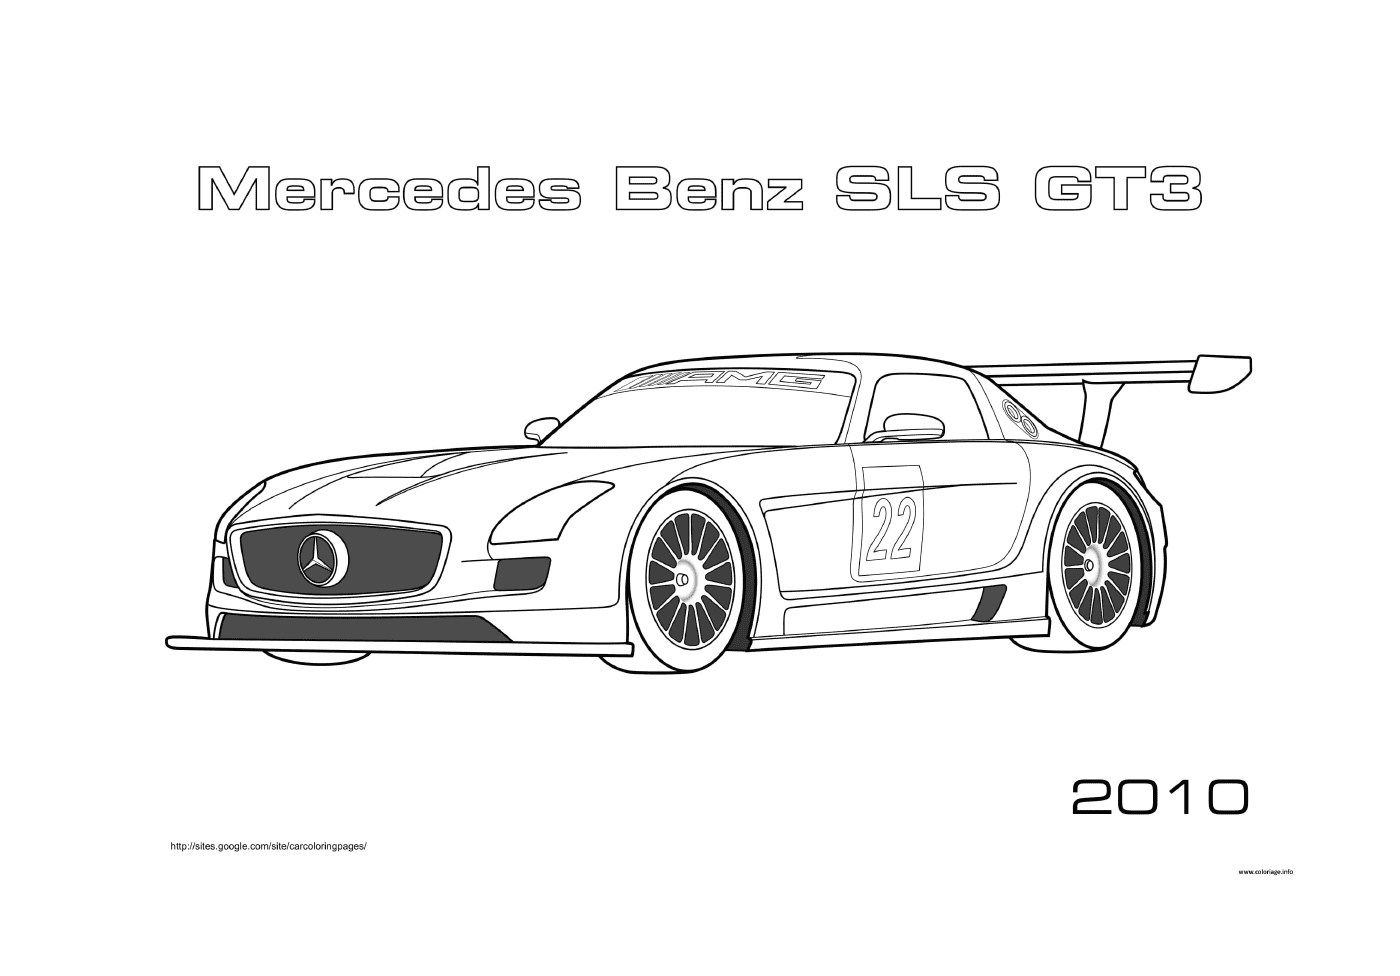  Mercedes-Benz SLS GT3 coche de carreras 